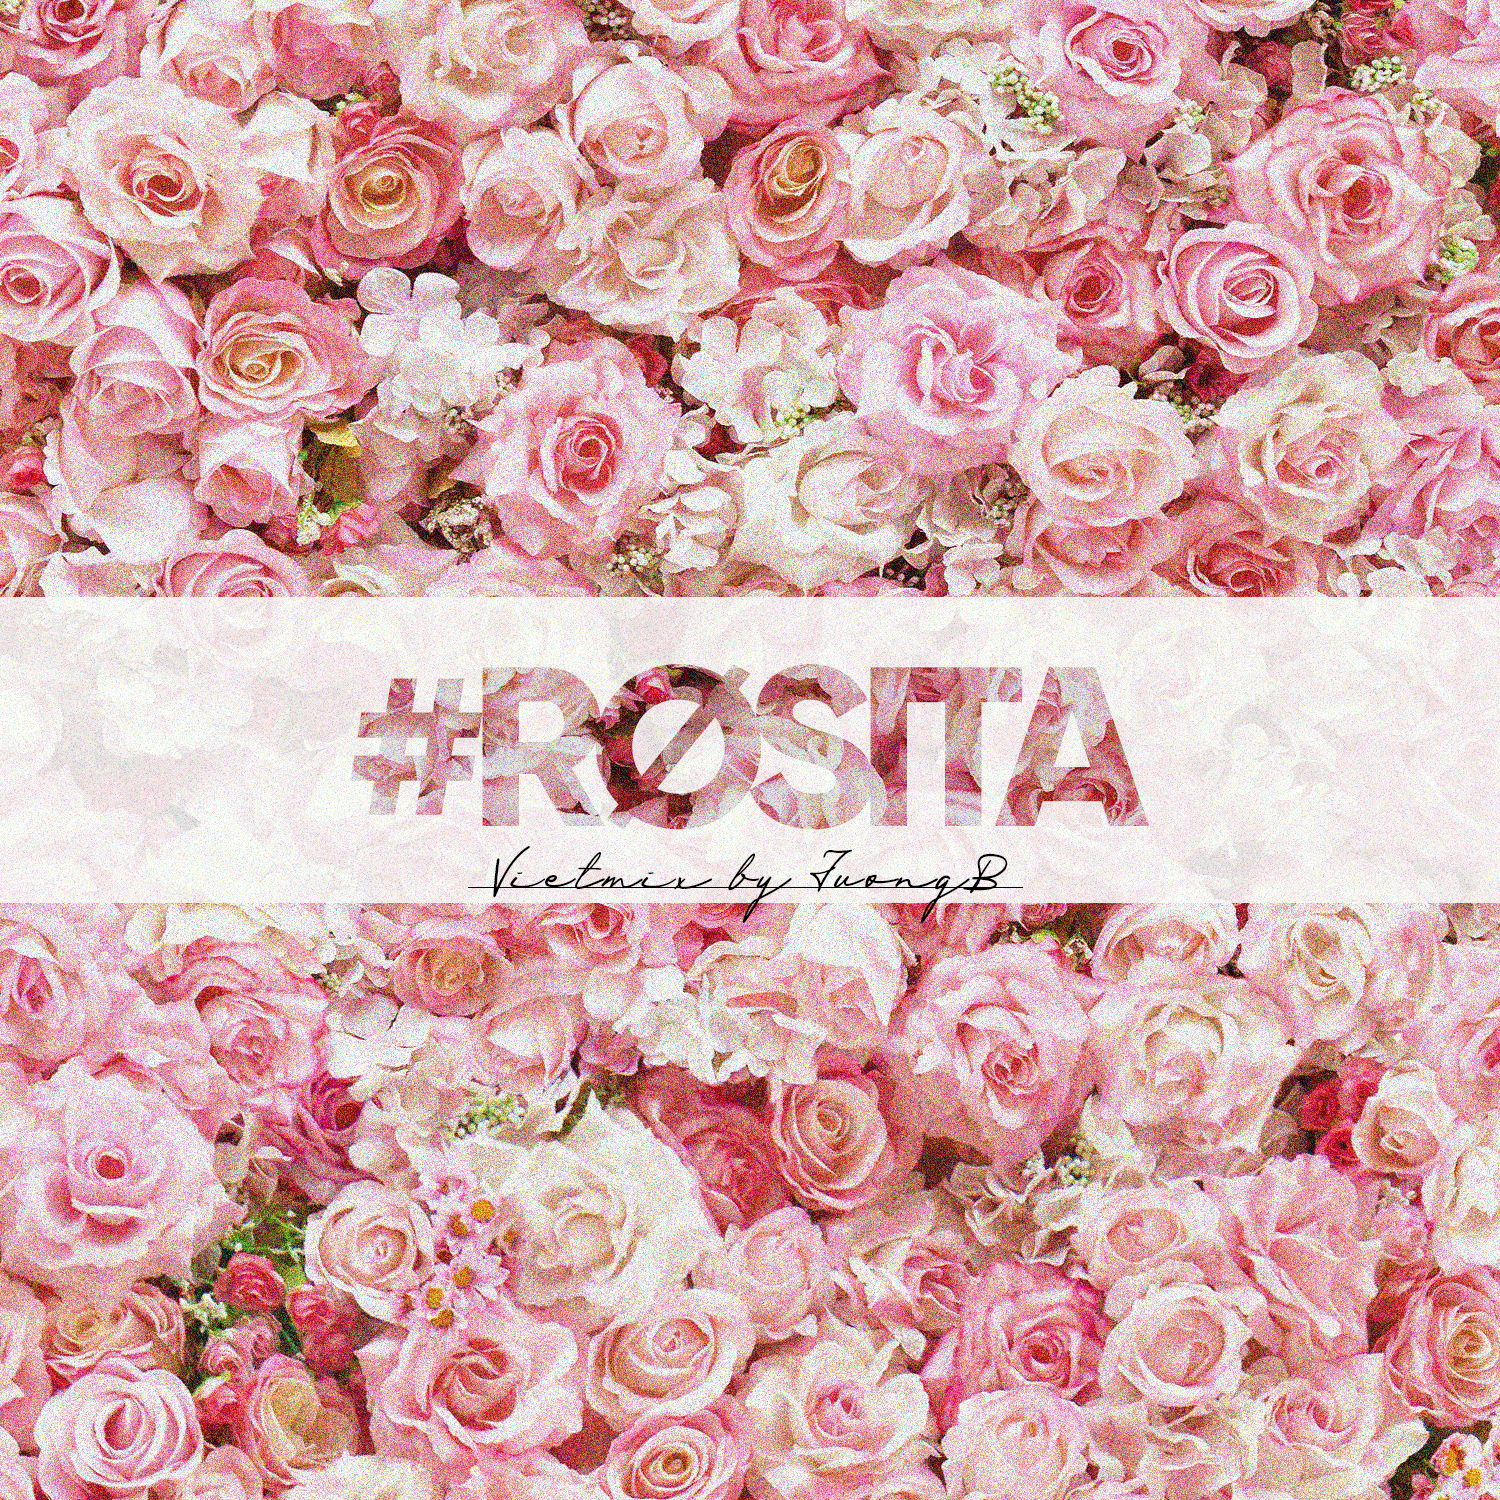 ډاونلوډ #Rosita - Vietmix By JuongB